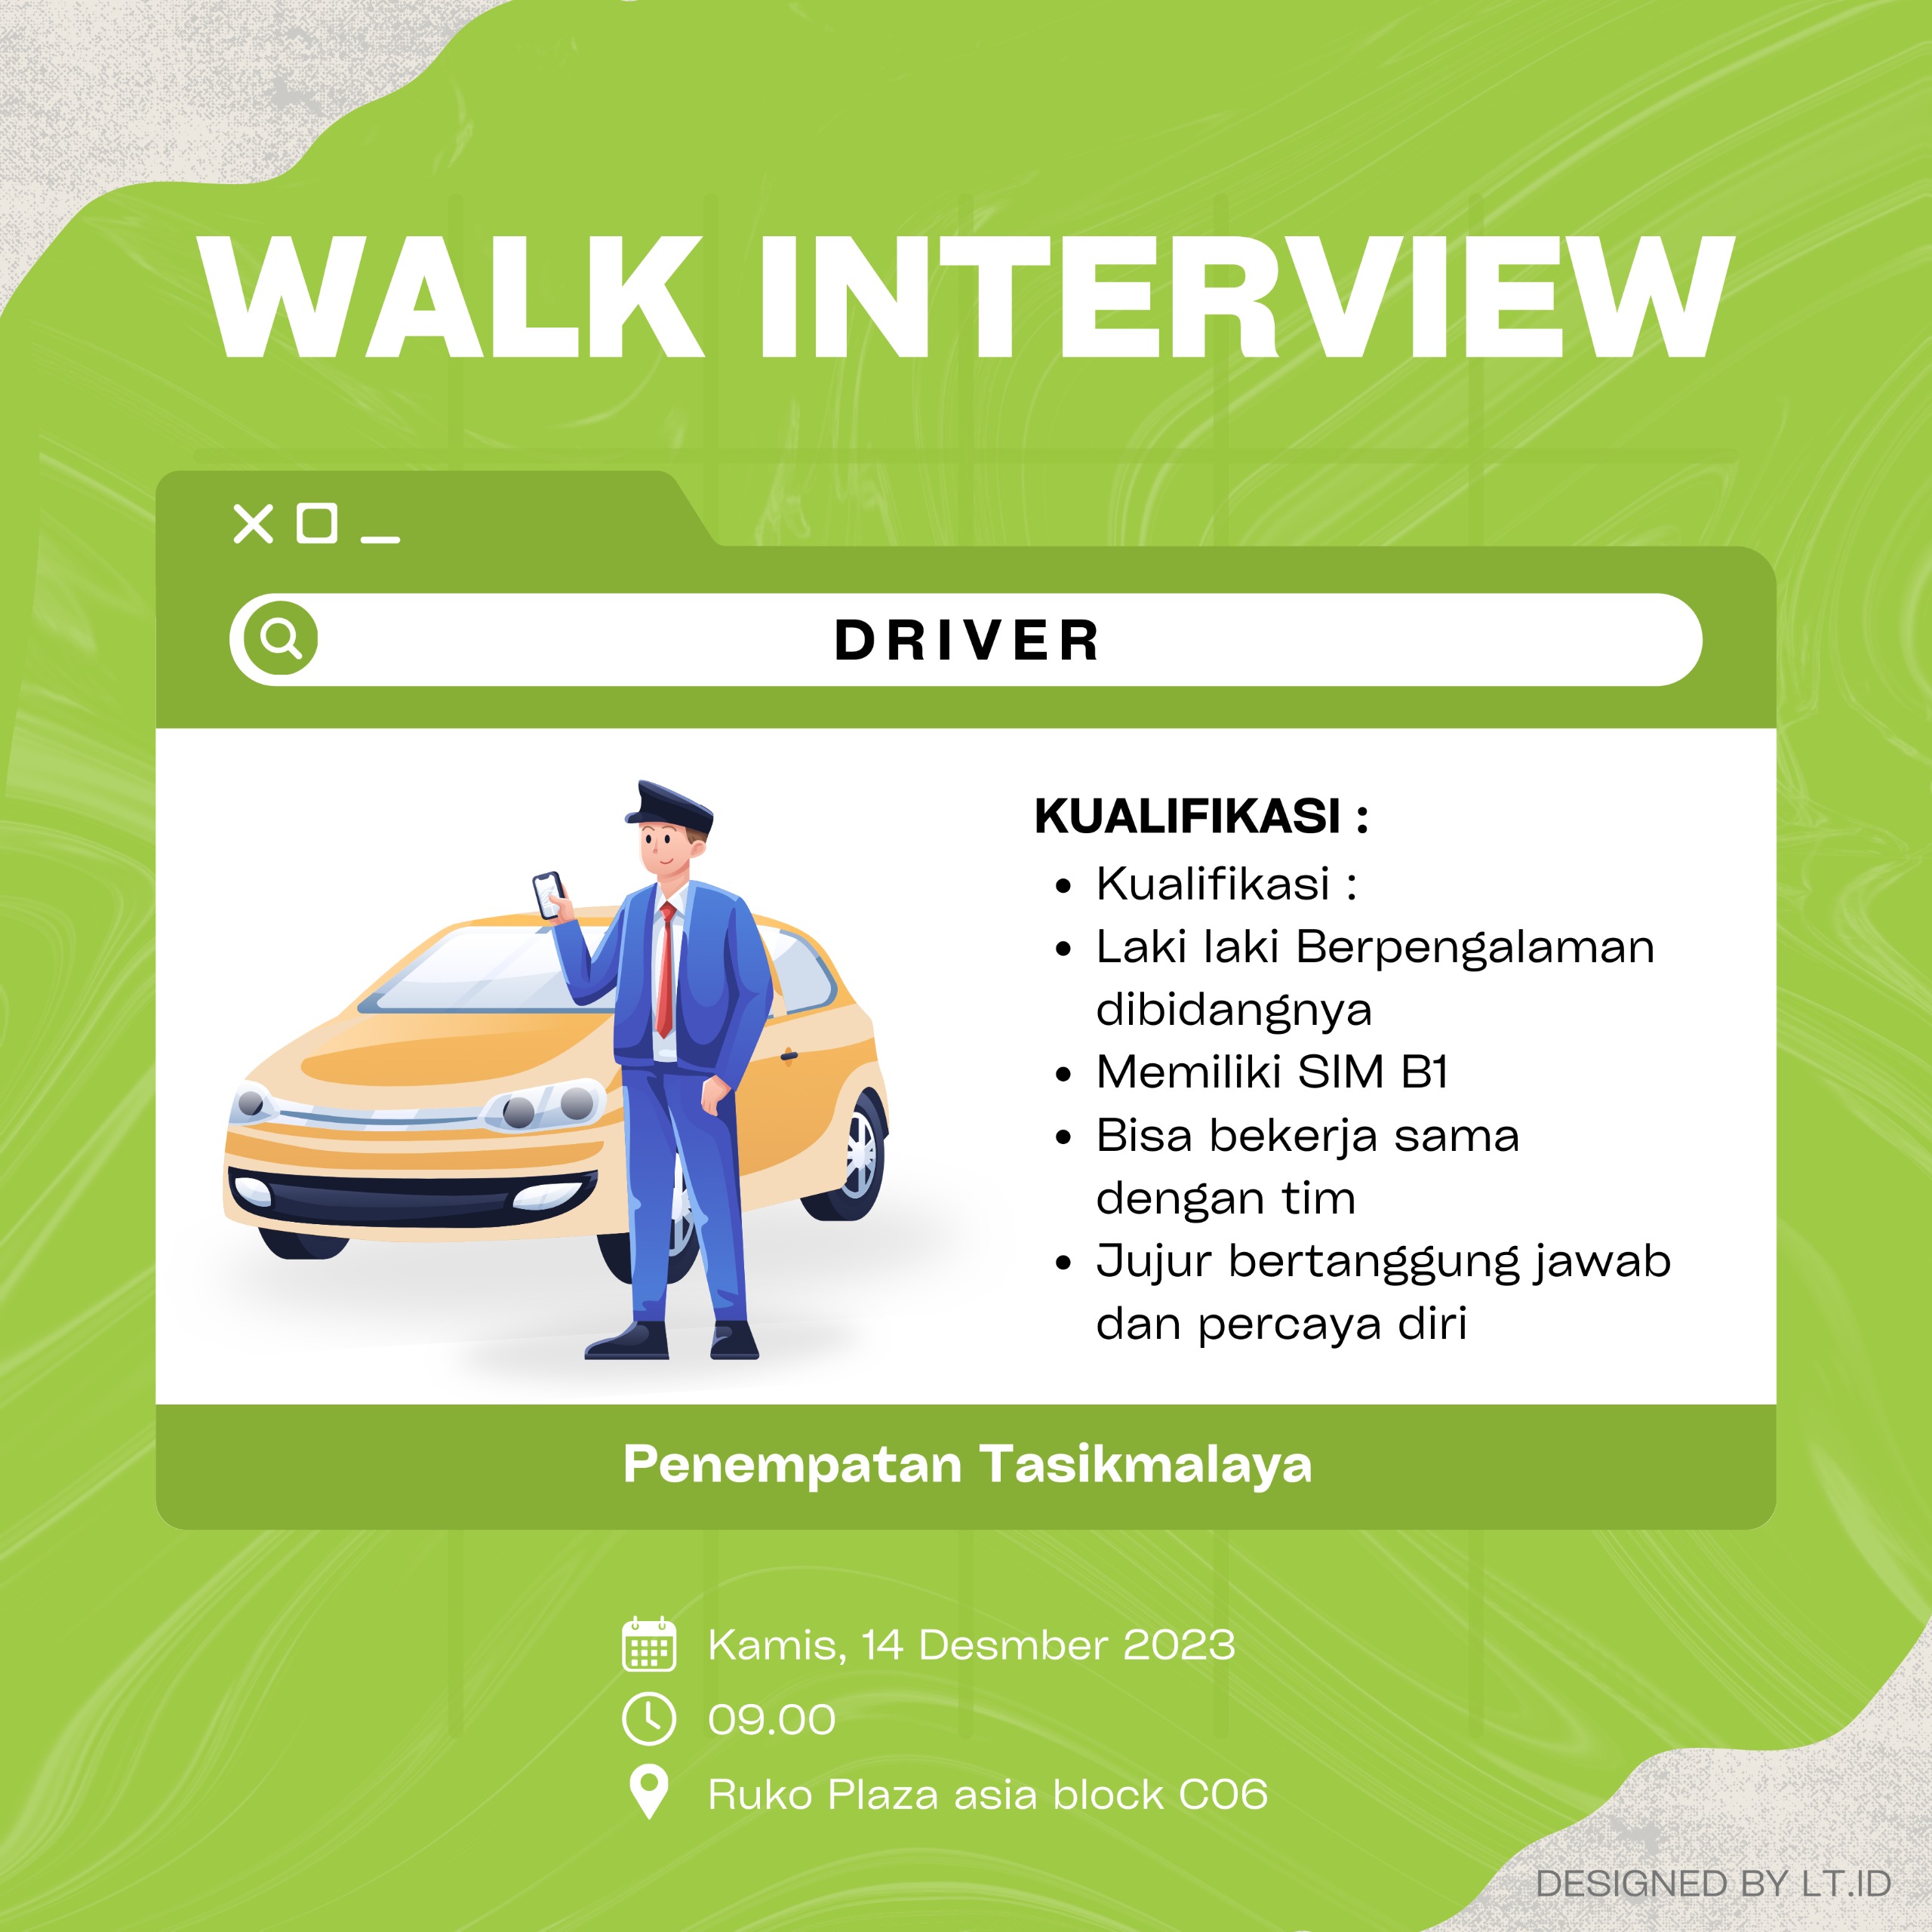 Walk-Interview-Posisi-Driver-Untuk-Penempatan-di-Tasikmalaya-Catat-Tanggal-Interviewnya